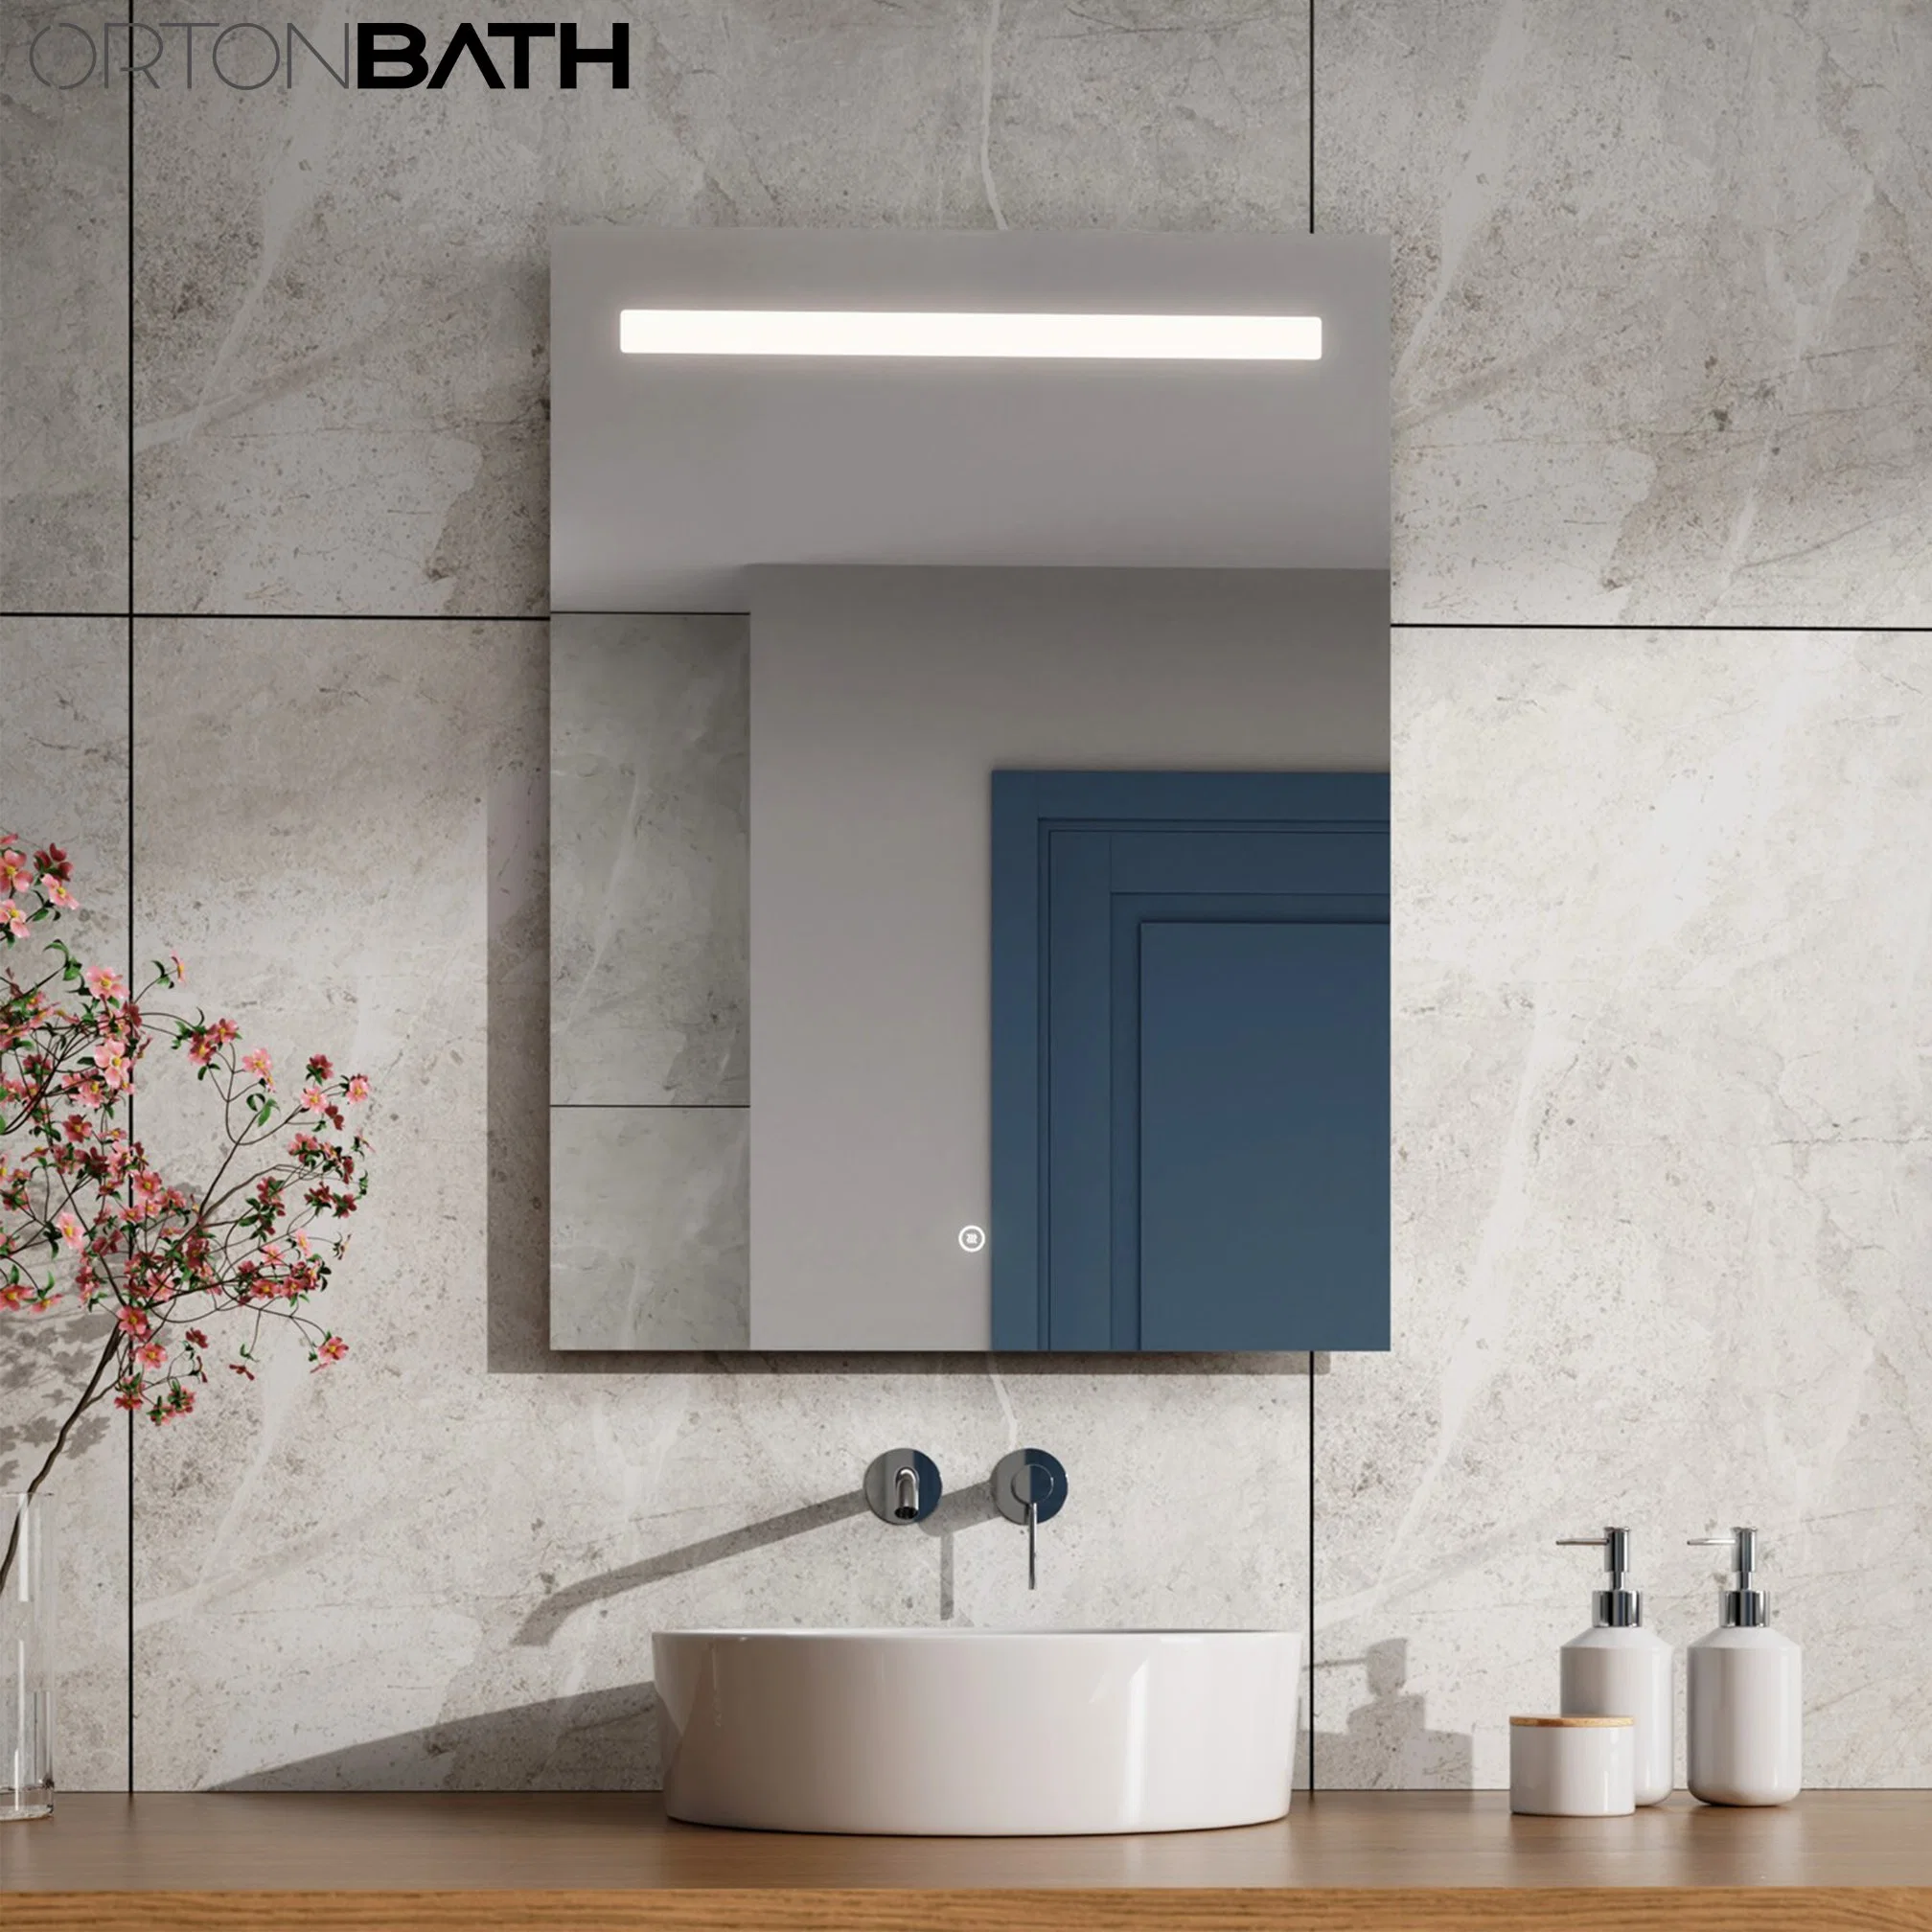 Ortonbath Badezimmer Kosmetikspiegel LED Make-up Spiegel beleuchtet Touch-Schalter Verhaufenschutzter Rechteckiger Dekorativer Badezimmerspiegel